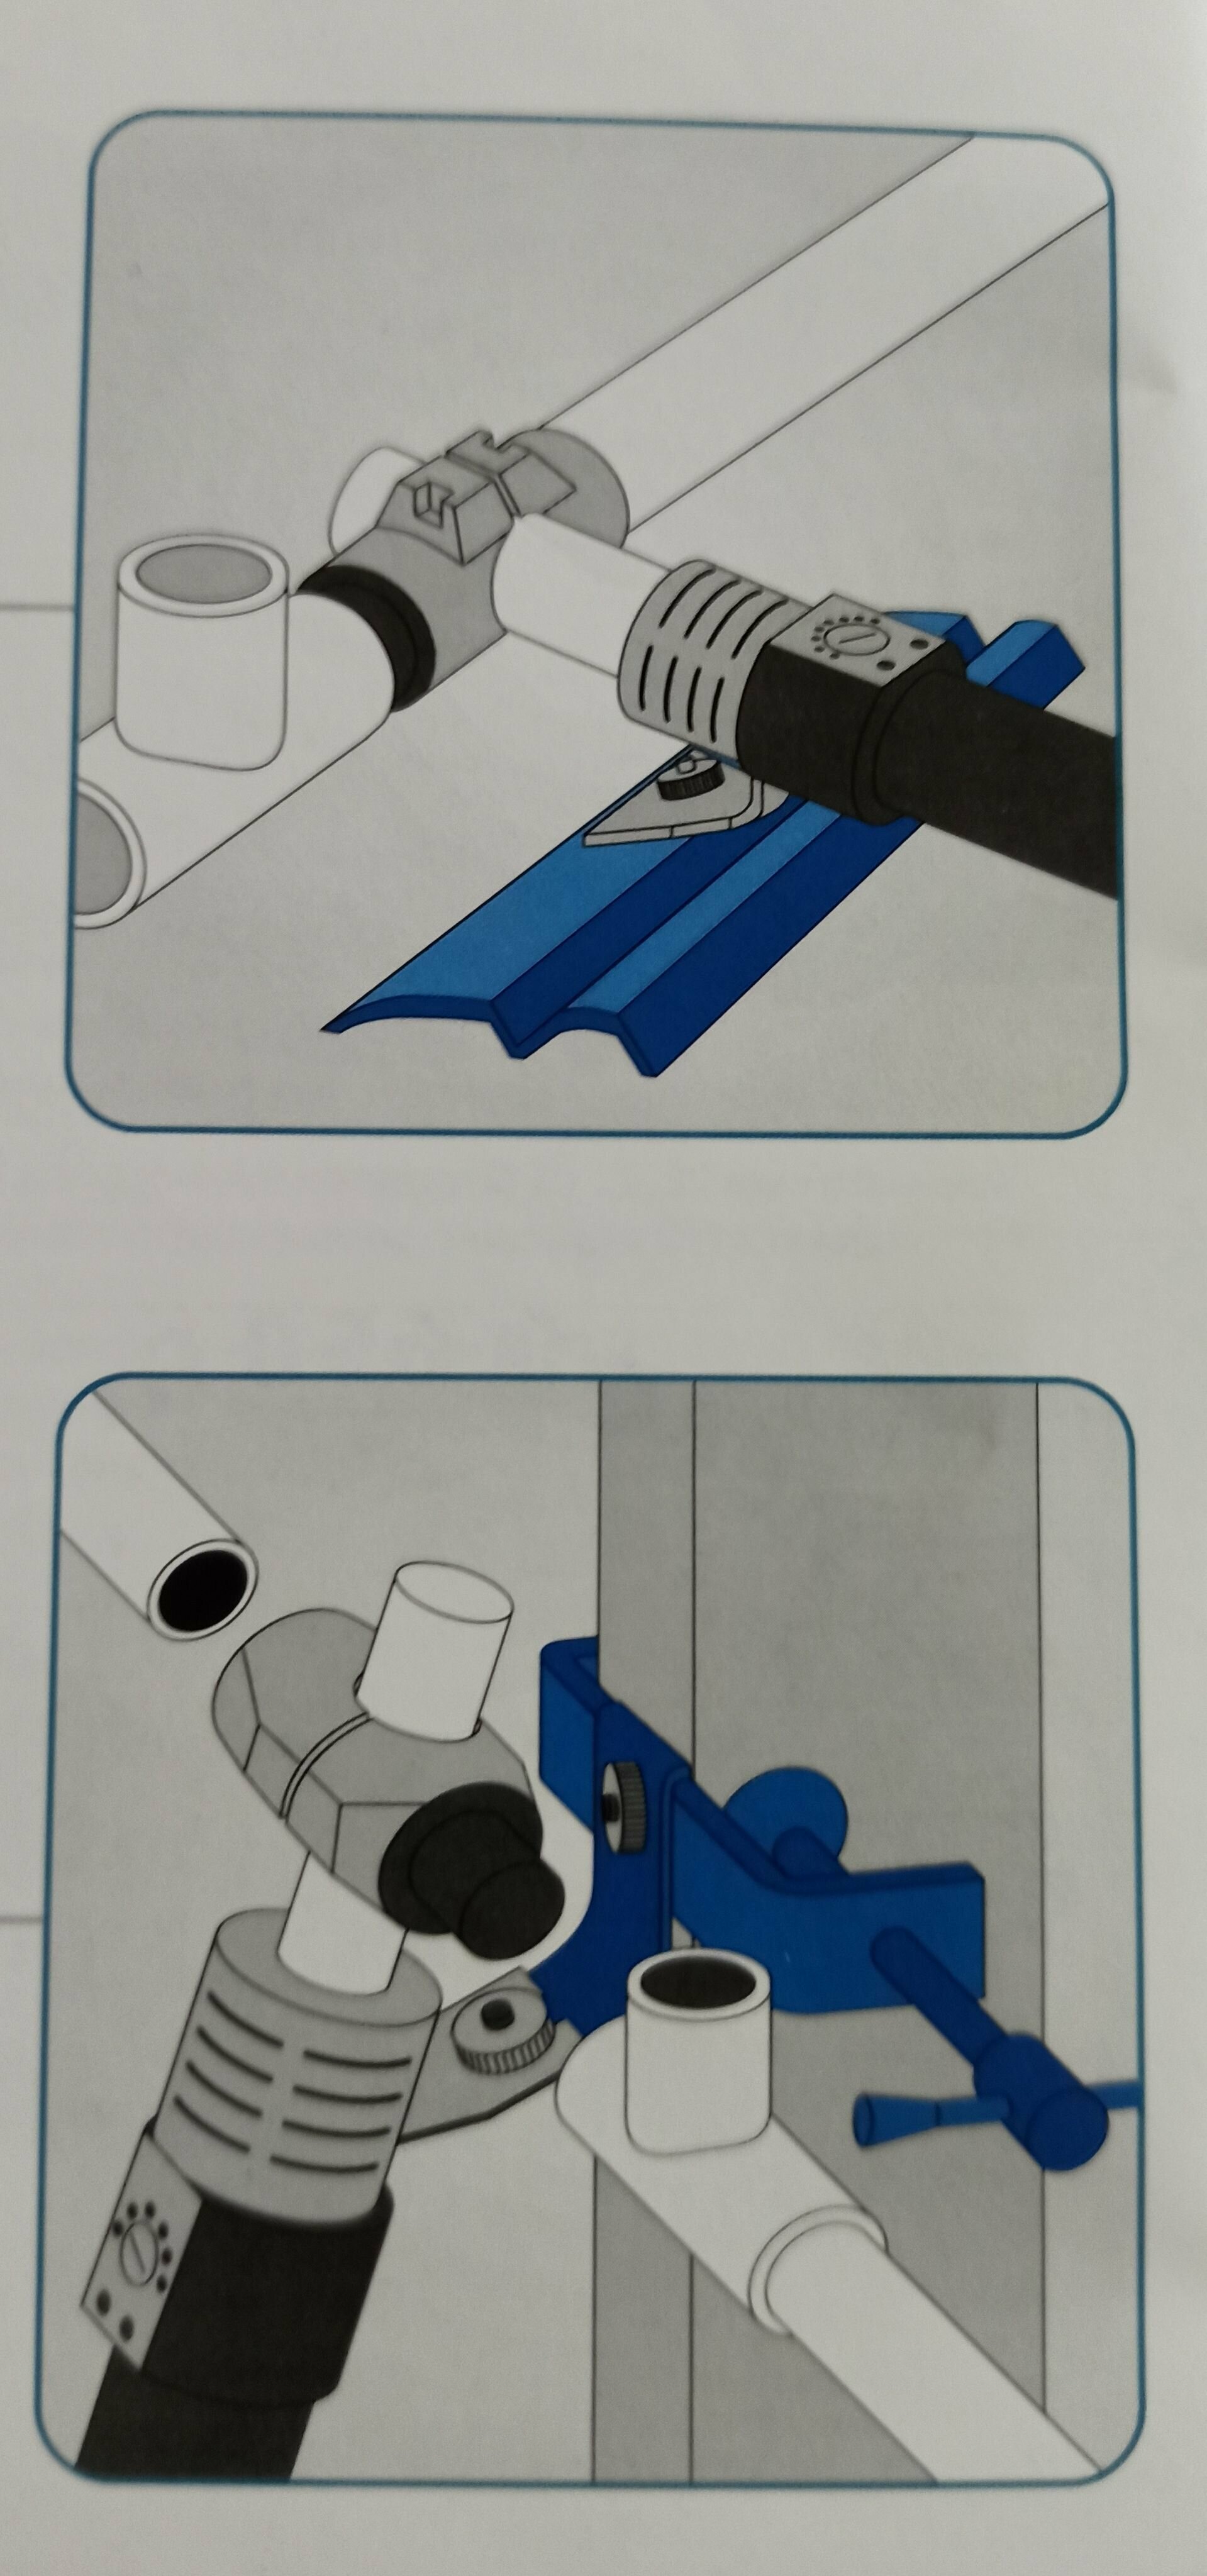 Комплект для сварки пластиковых труб DYTRON Set P-4a 850W TW PROFI blue (16-63) утюг для полипропиленовых труб (D03982) - фотография № 10